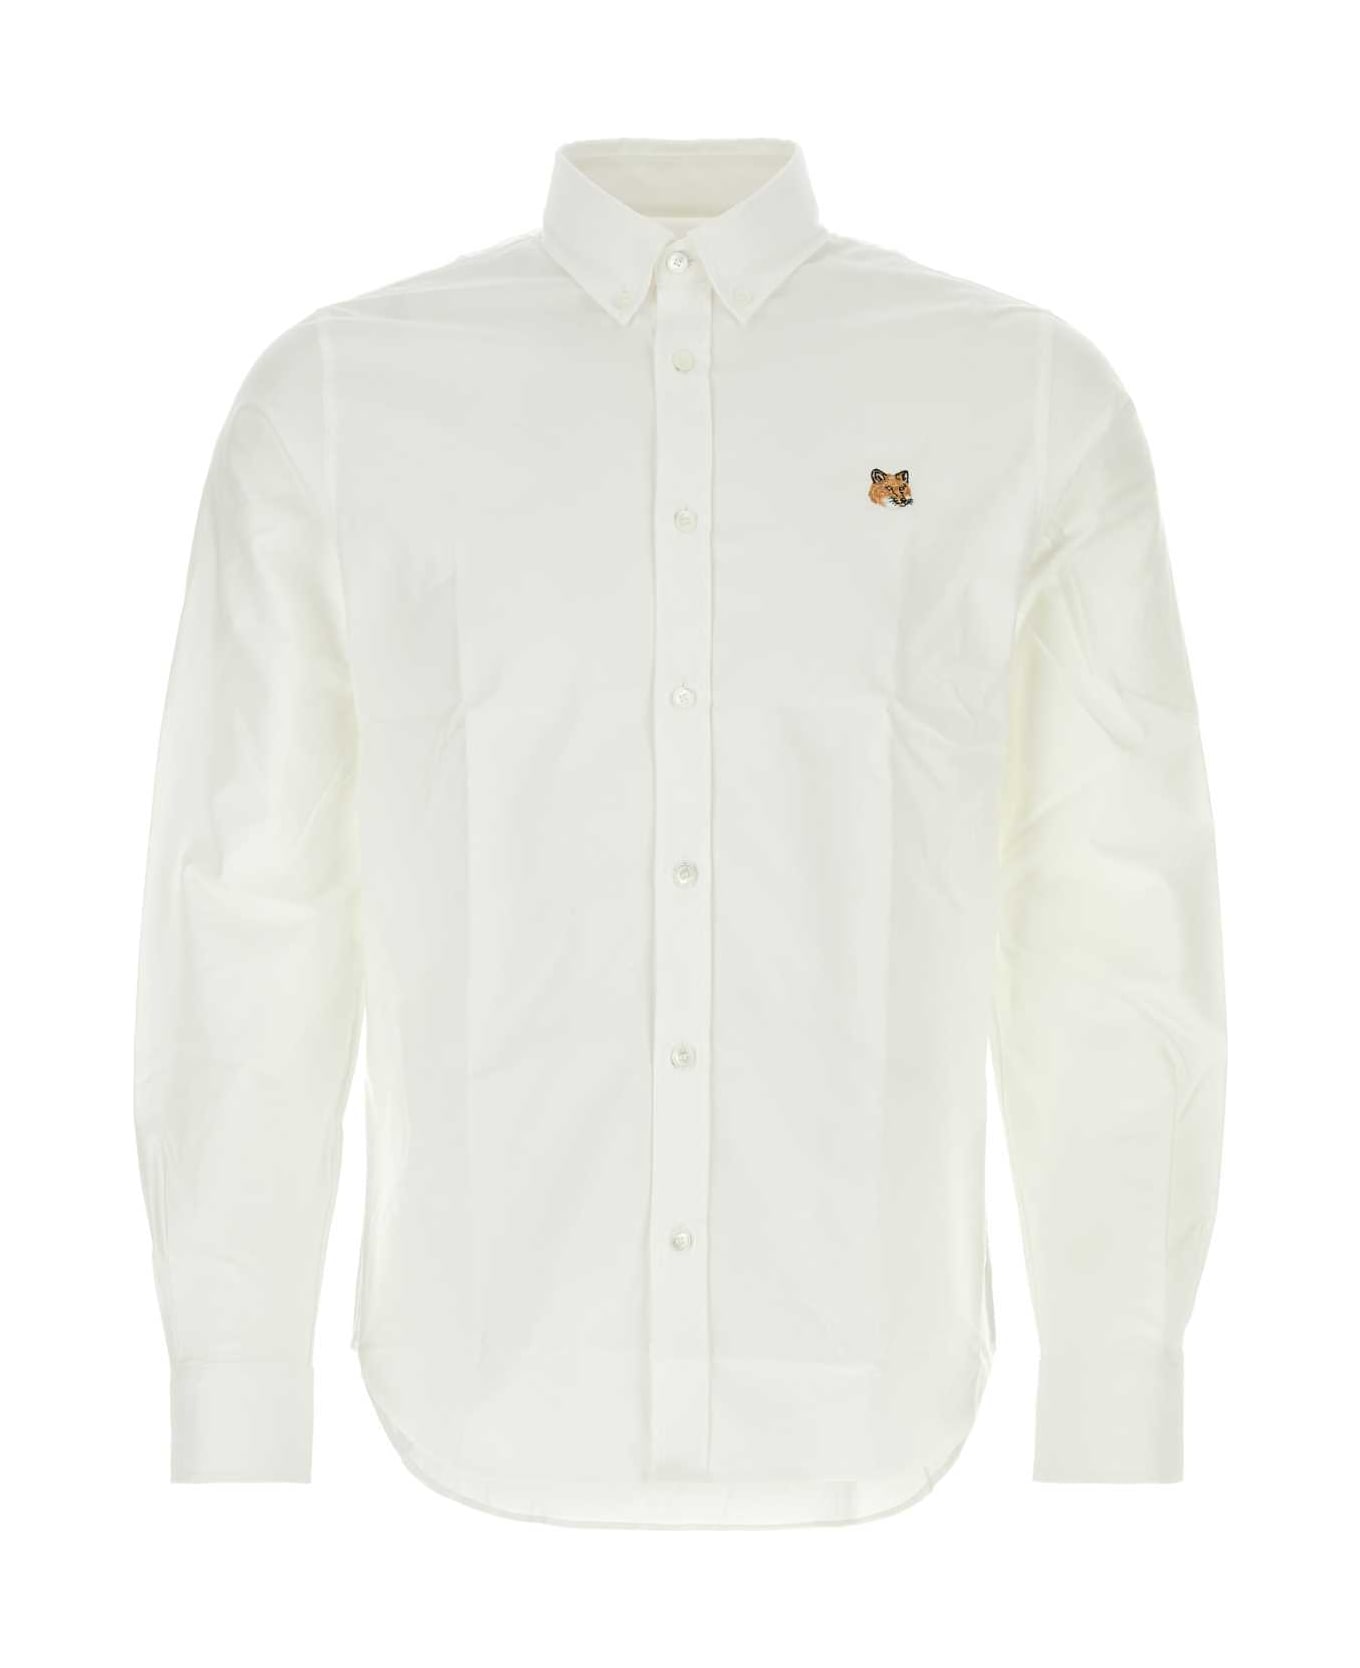 Maison Kitsuné White Poplin Shirt - WHITE